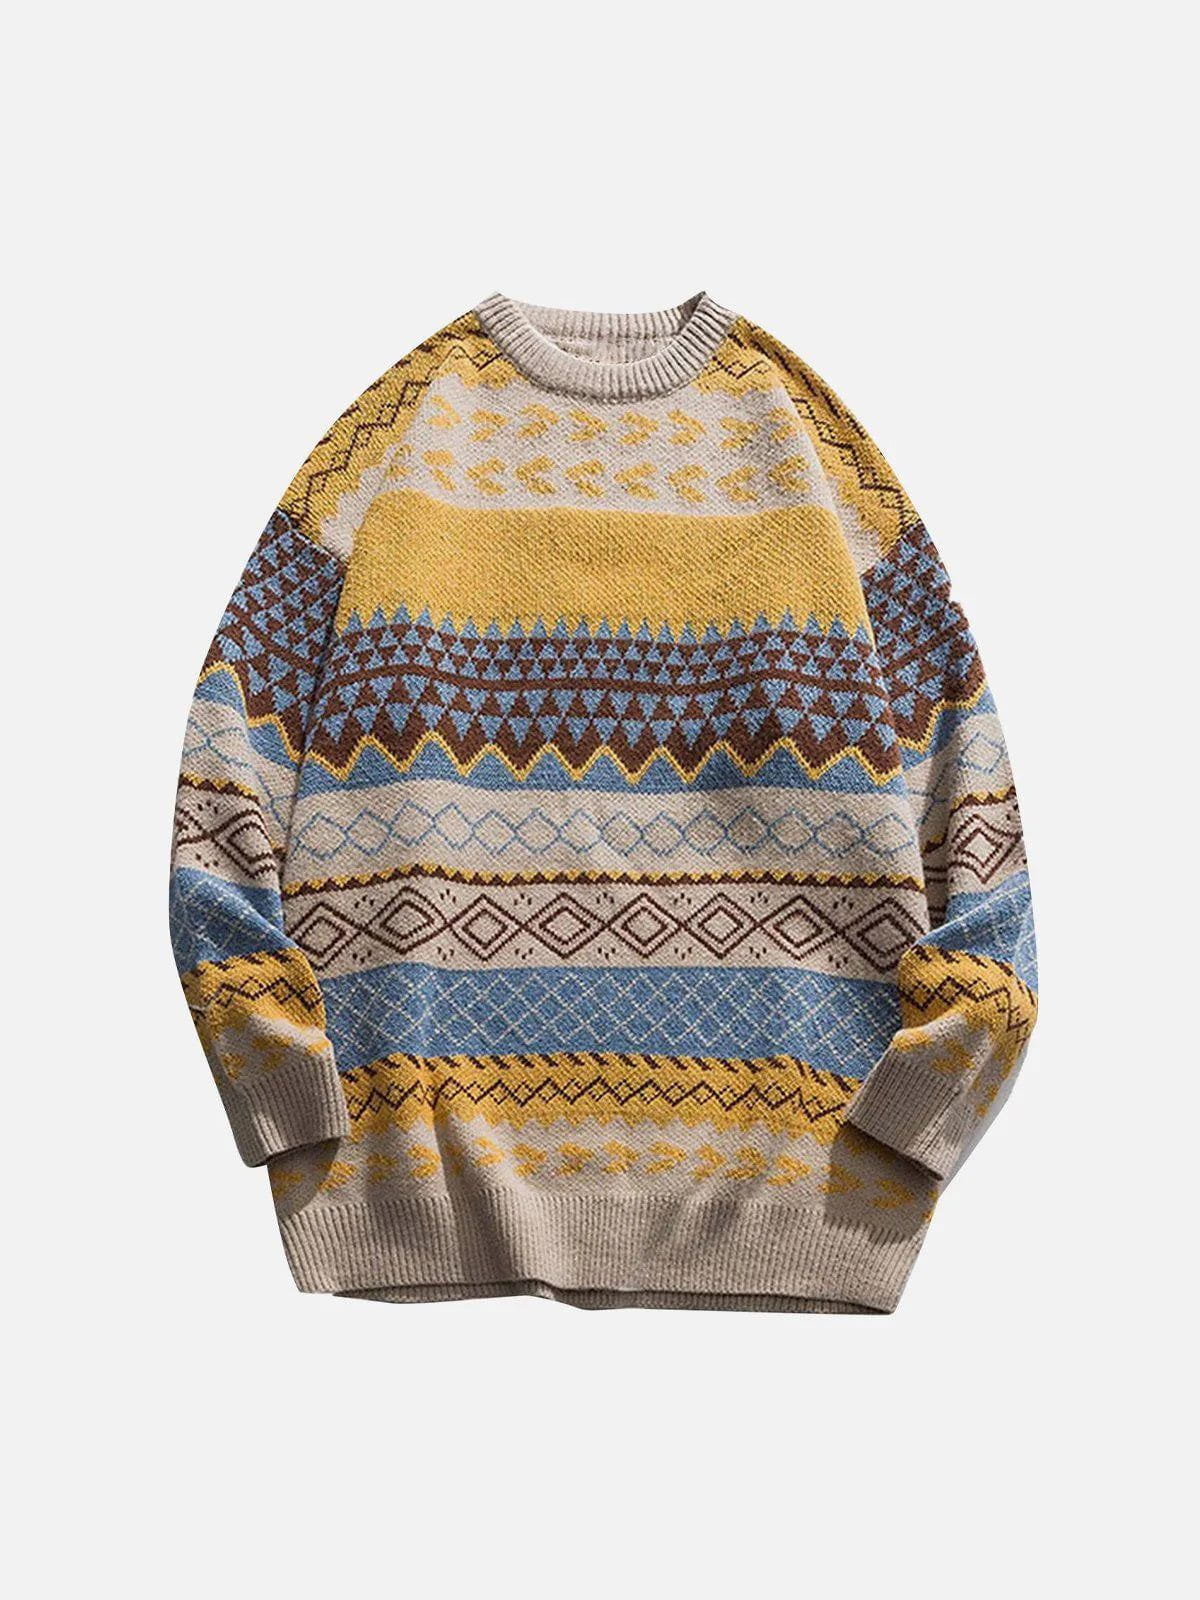 Vintage "Taste Of Season" Soft Sweater Streetwear Brand Techwear Combat Tactical YUGEN THEORY